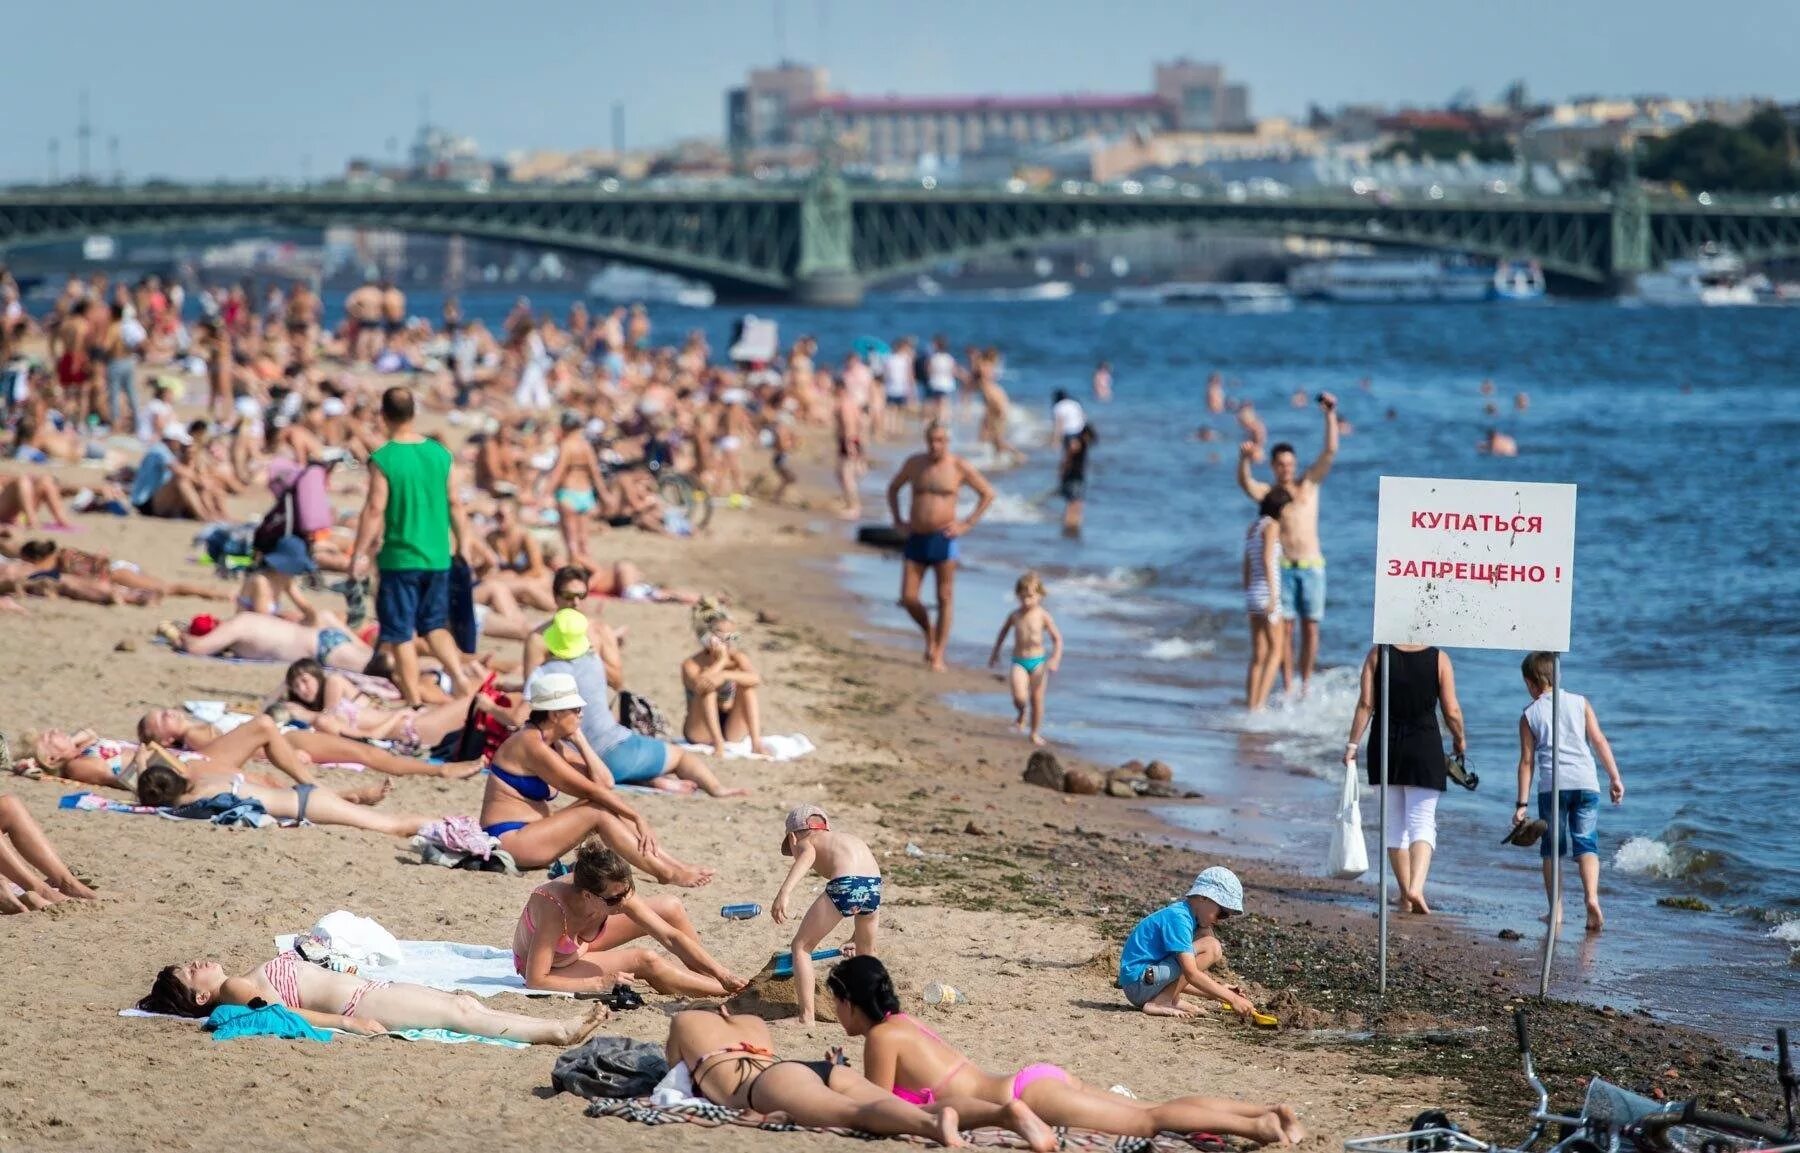 Петербург где можно купаться. Люди на пляже. Пляж с отдыхающими. Пляж Санкт-Петербург. Переполненные пляжи.